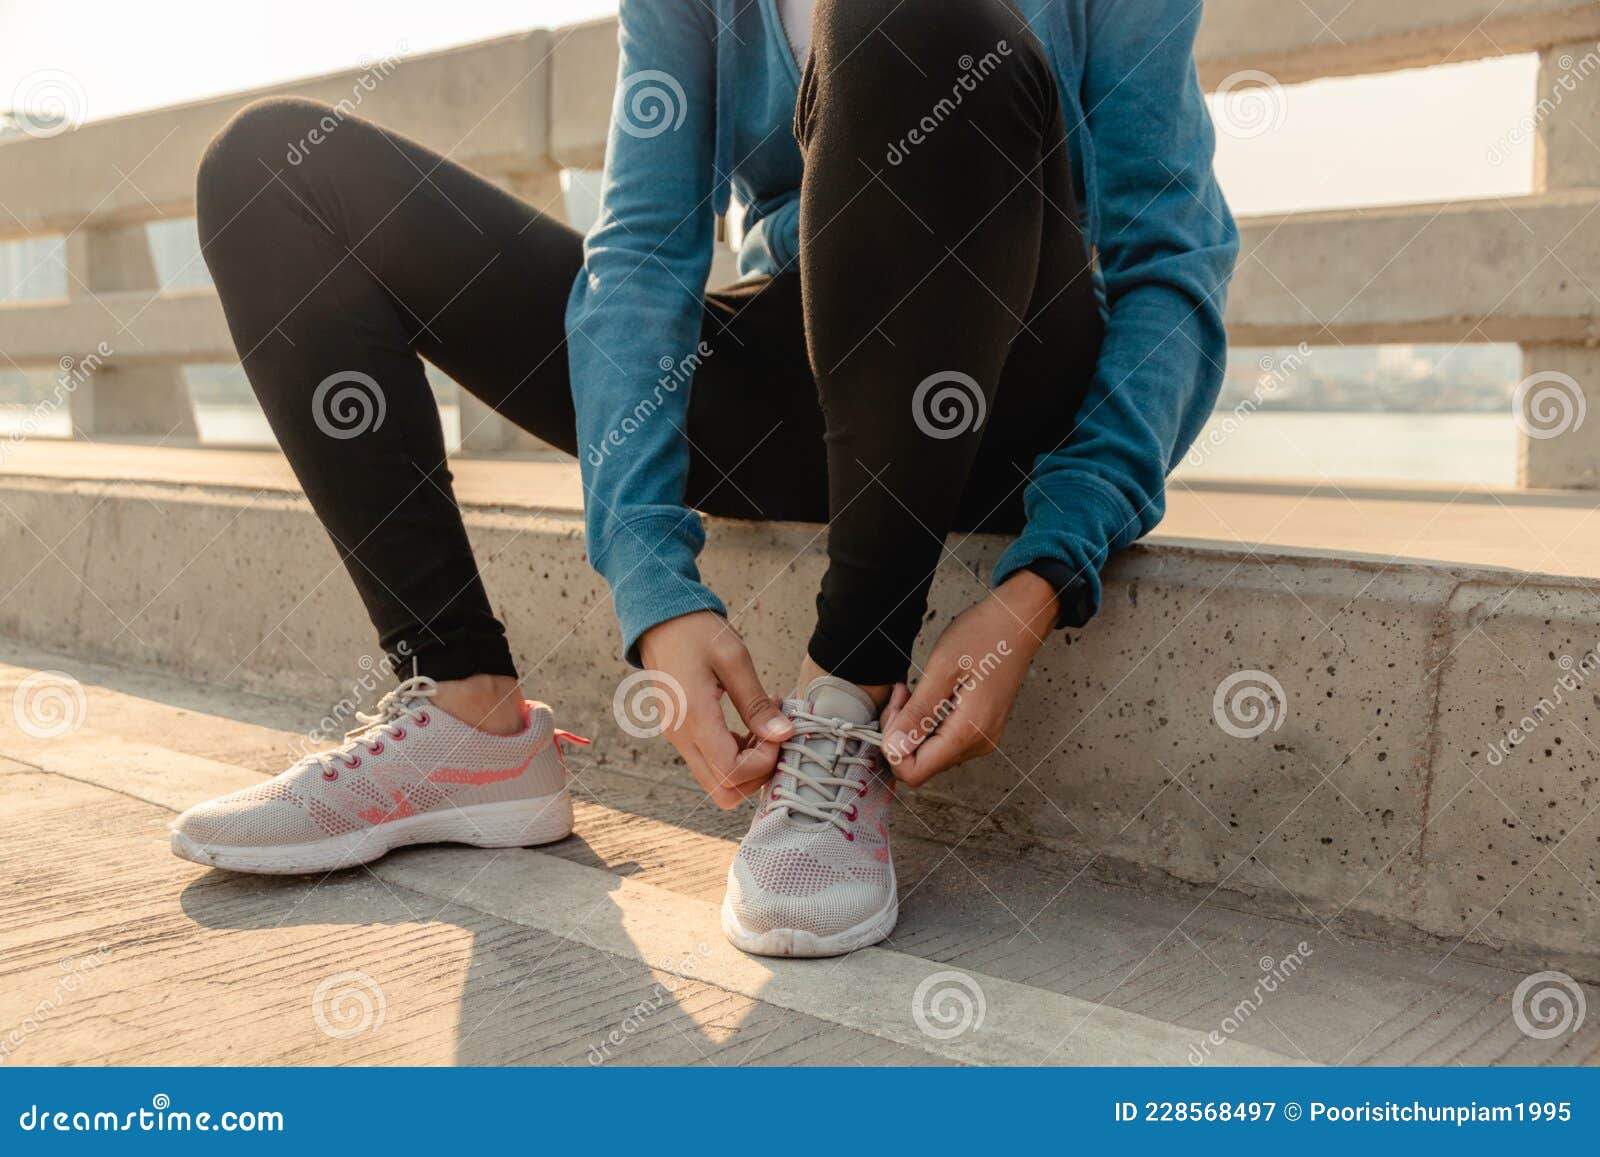 Cerrar Las Manos Deportivas Atando Zapatos De Correr Al Aire Libre. Mujer Preparándose Hacer Ejercicio Físico Por La Mañana Imagen de archivo - Imagen de lifestyle, hembra: 228568497